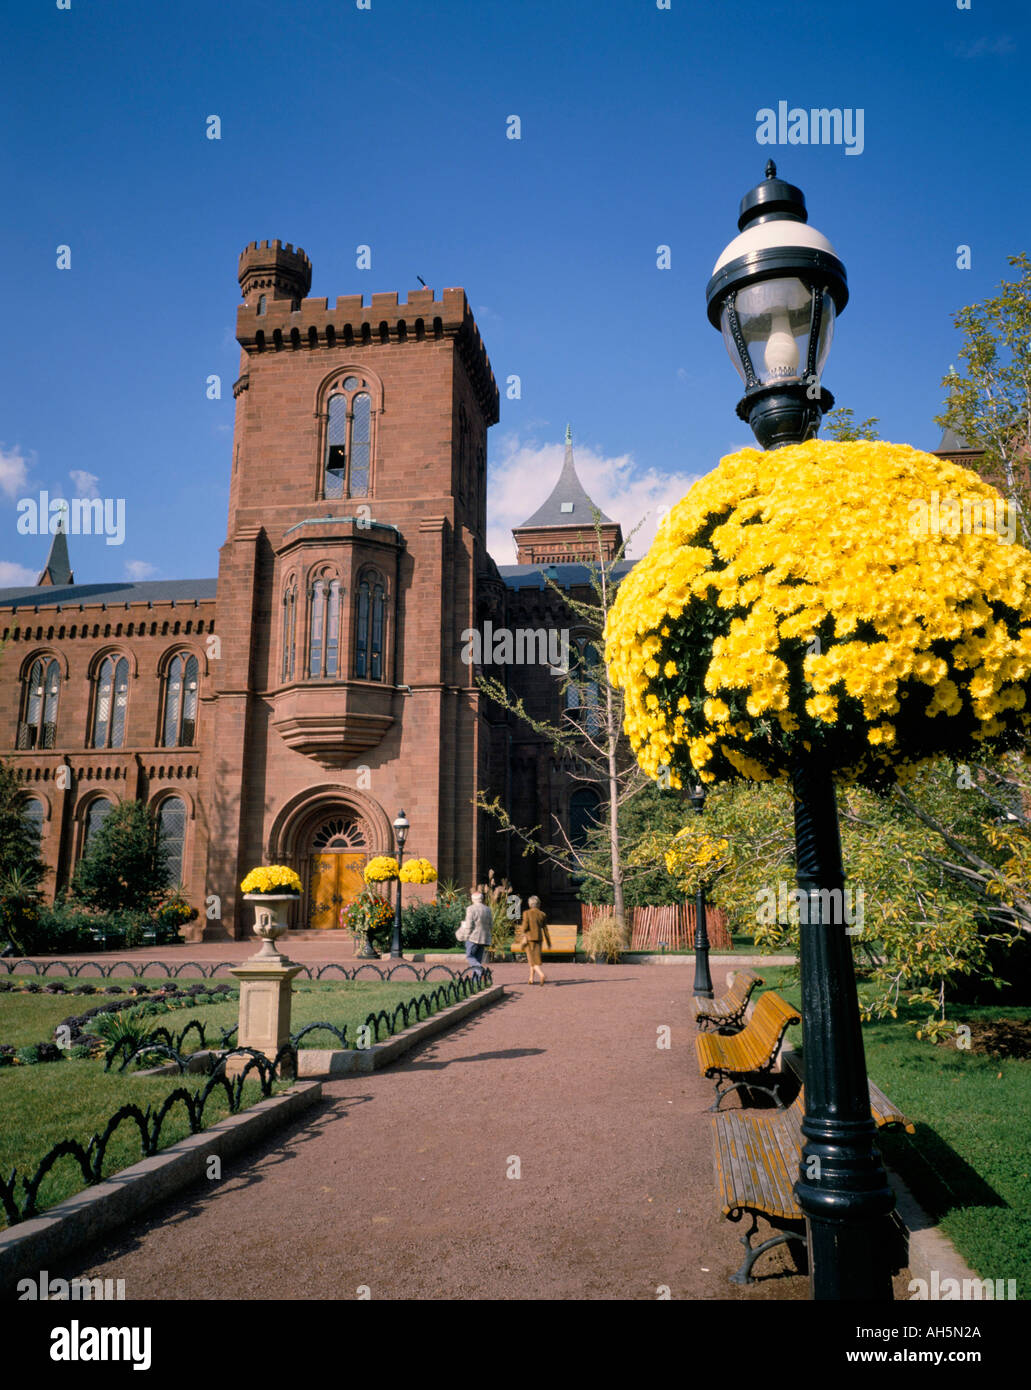 Smithsonian Institute Washington DC États-Unis d'Amérique Amérique du Nord Banque D'Images